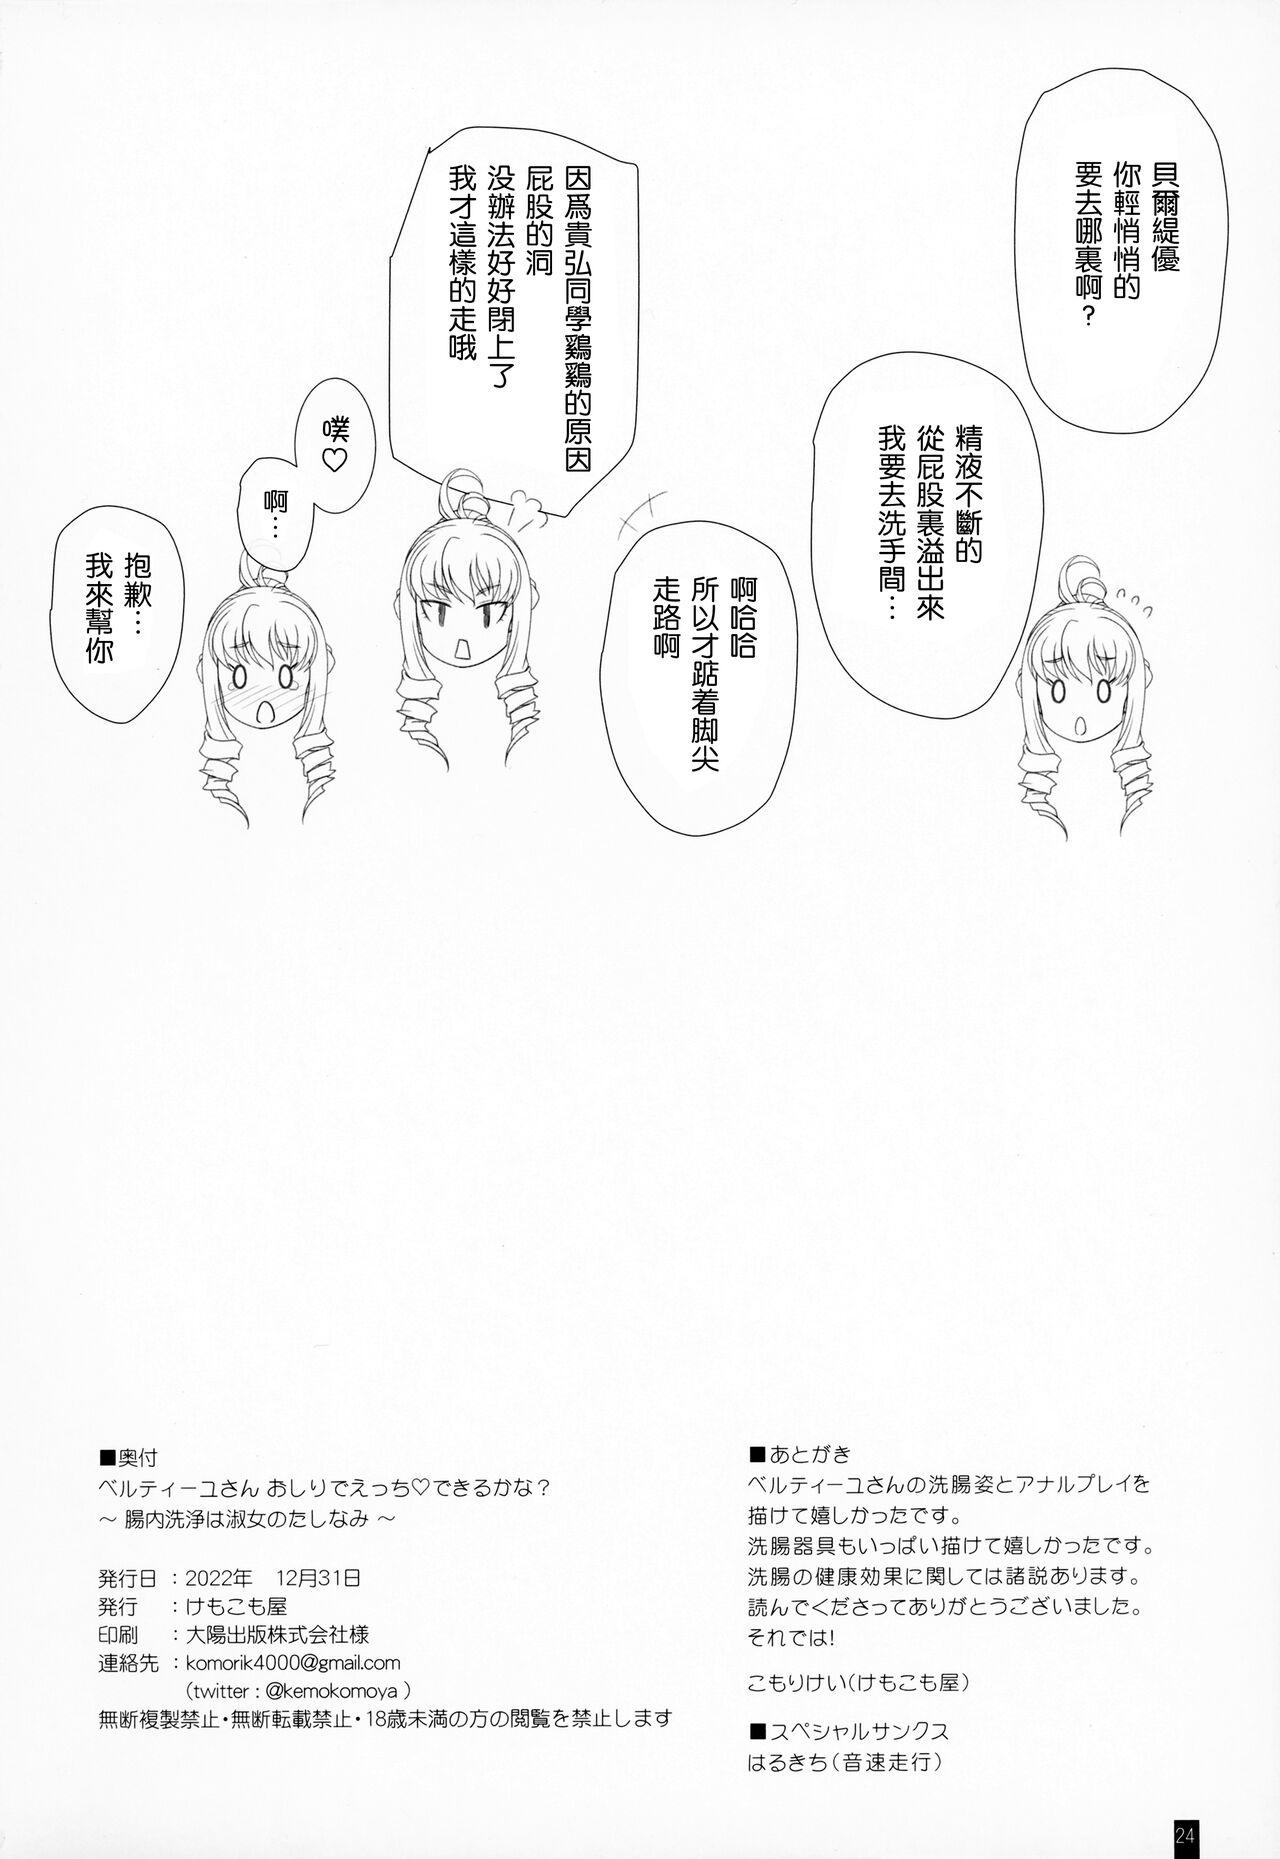 Escort Bertille San Oshiri De Ecchi♡ Dekiru Kana? - Walkure romanze Pounding - Page 23